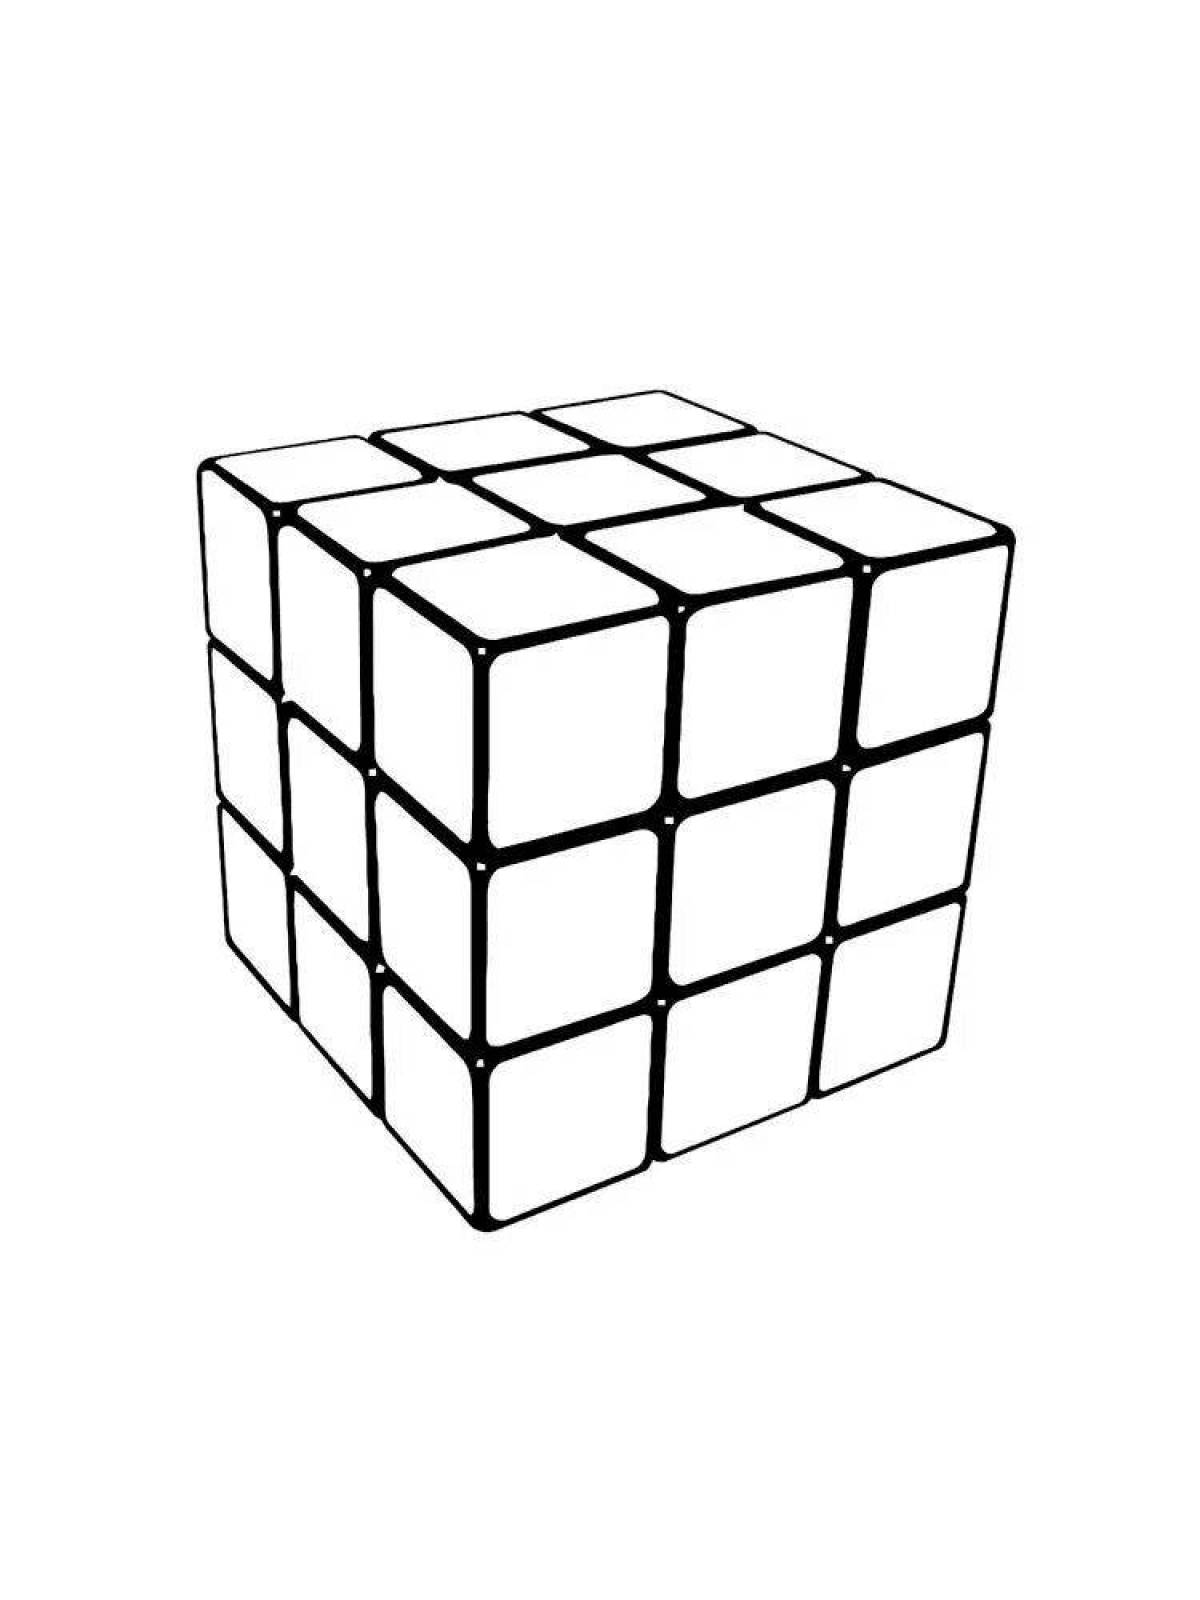 Увлекательная раскраска кубика рубика